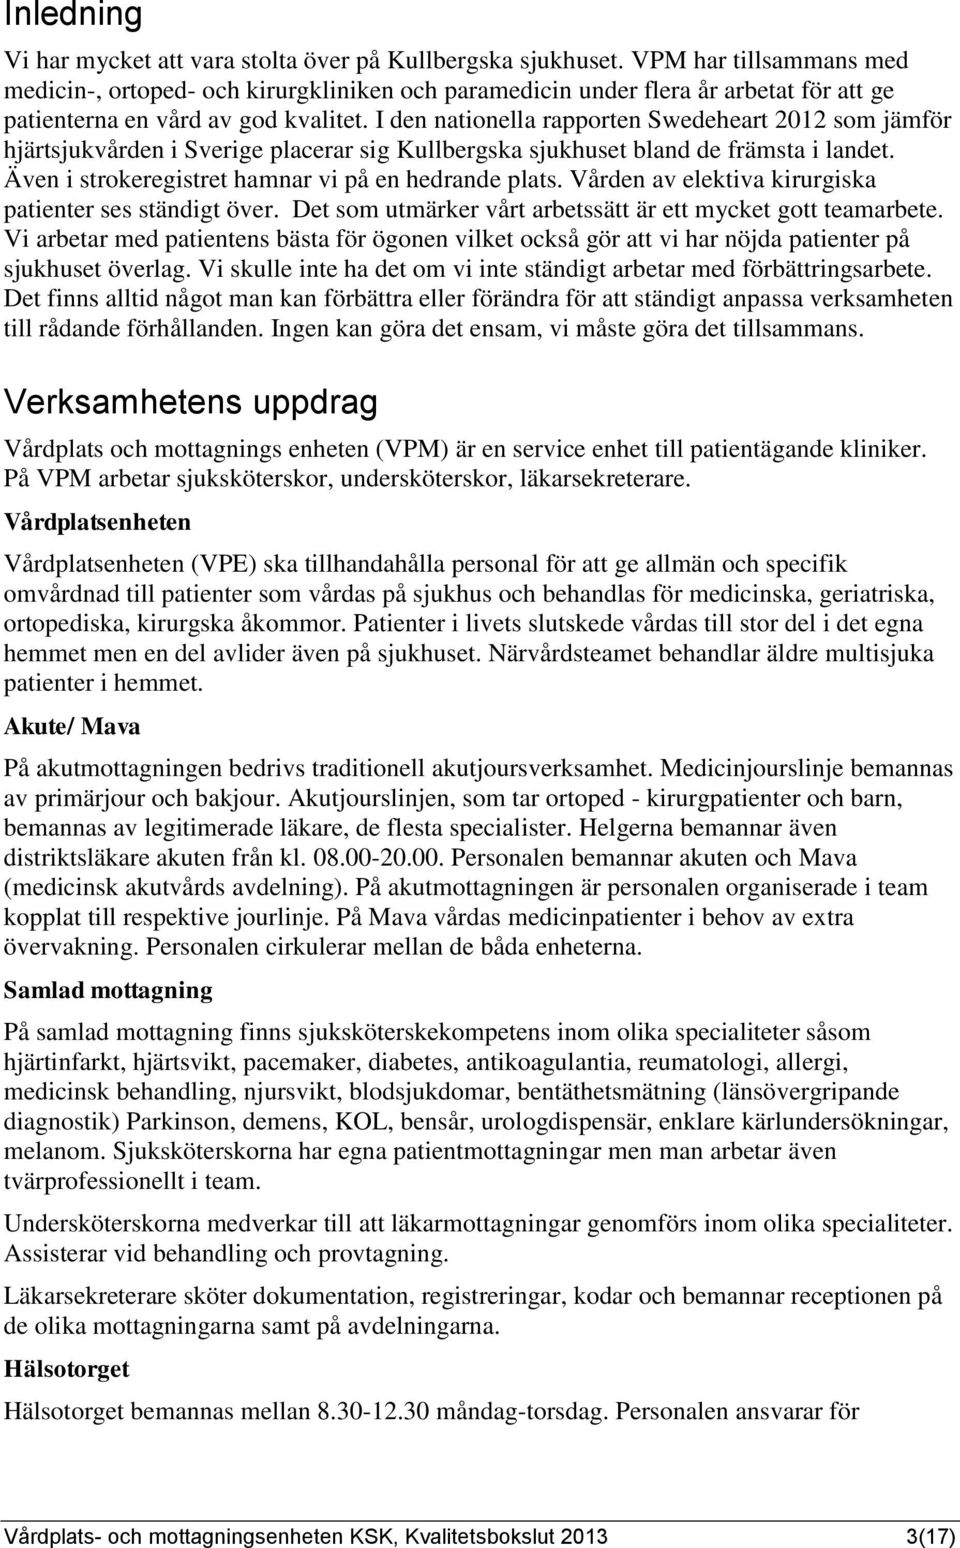 I den nationella rapporten Swedeheart 2 som jämför hjärtsjukvården i Sverige placerar sig Kullbergska sjukhuset bland de främsta i landet. Även i strokeregistret hamnar vi på en hedrande plats.